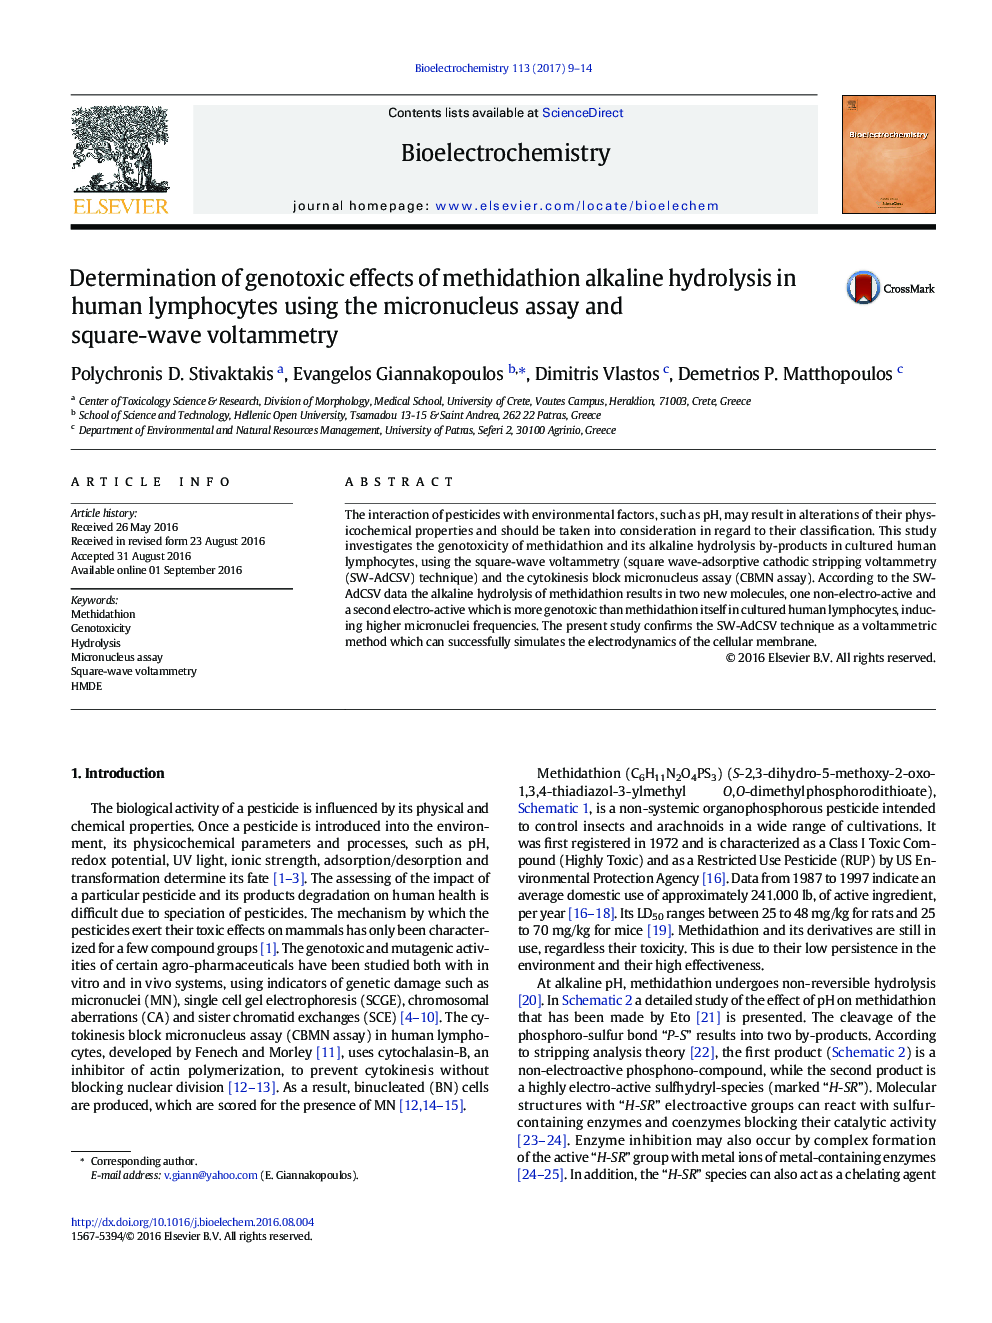 تعیین اثرات ژنوتوکسیک هیدرولیز قلیایی متیداتیون در لنفوسیت های انسانی با استفاده از آزمون میکرونوکلئوس و ولتامتری مربع موج 